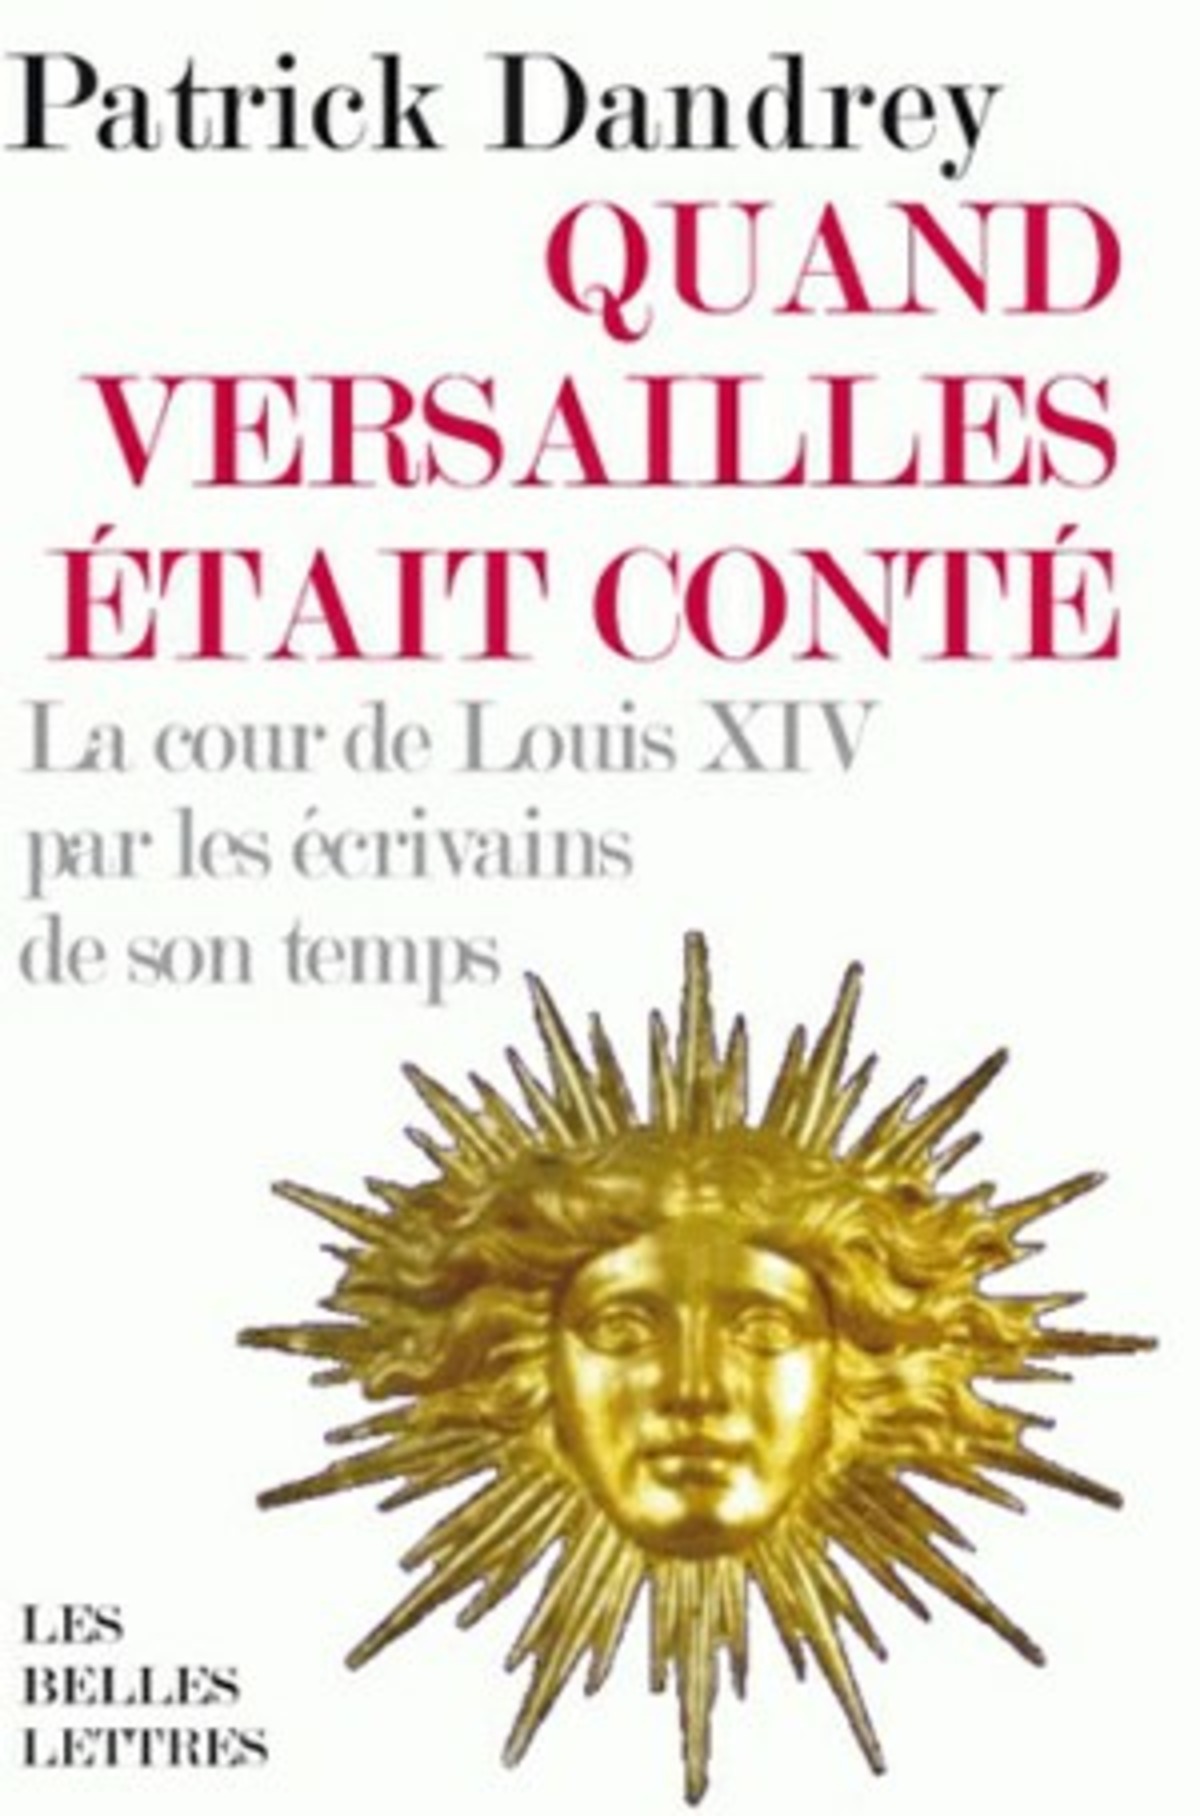 Quand Versailles était conté... La cour de Louis XIV par les écrivains de son temps